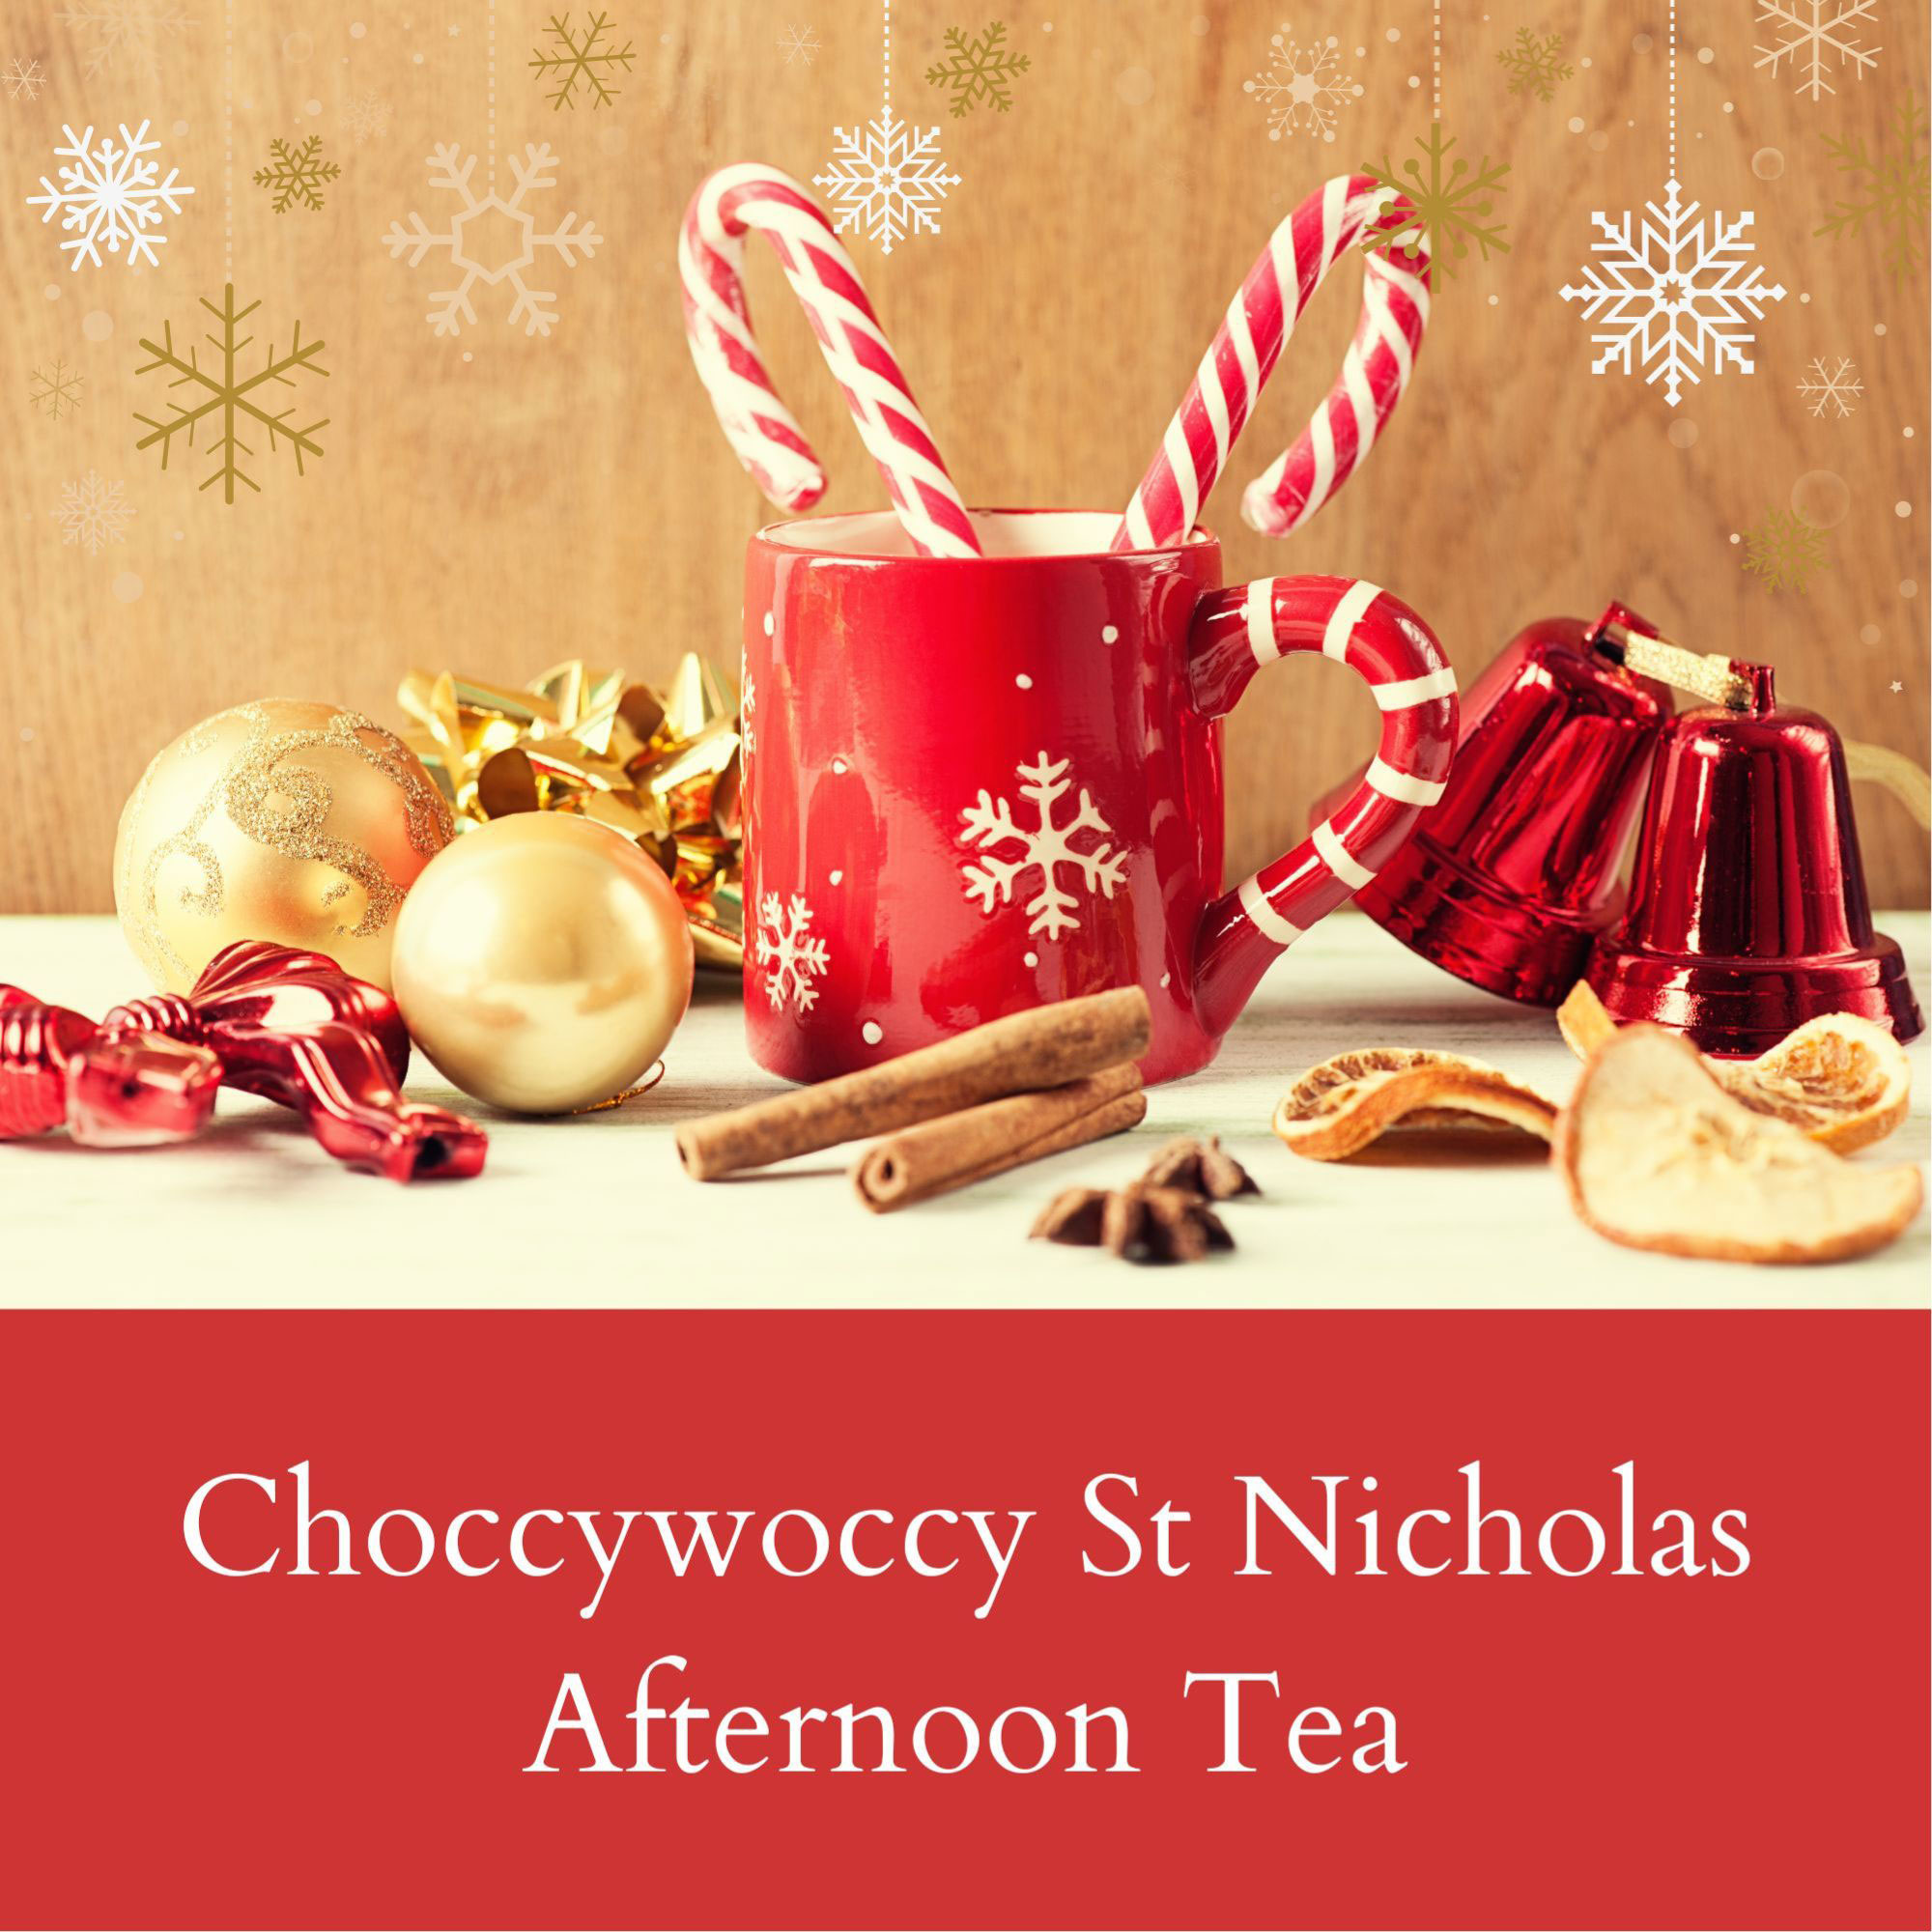 Choccywoccy St Nicholas Afternoon Tea